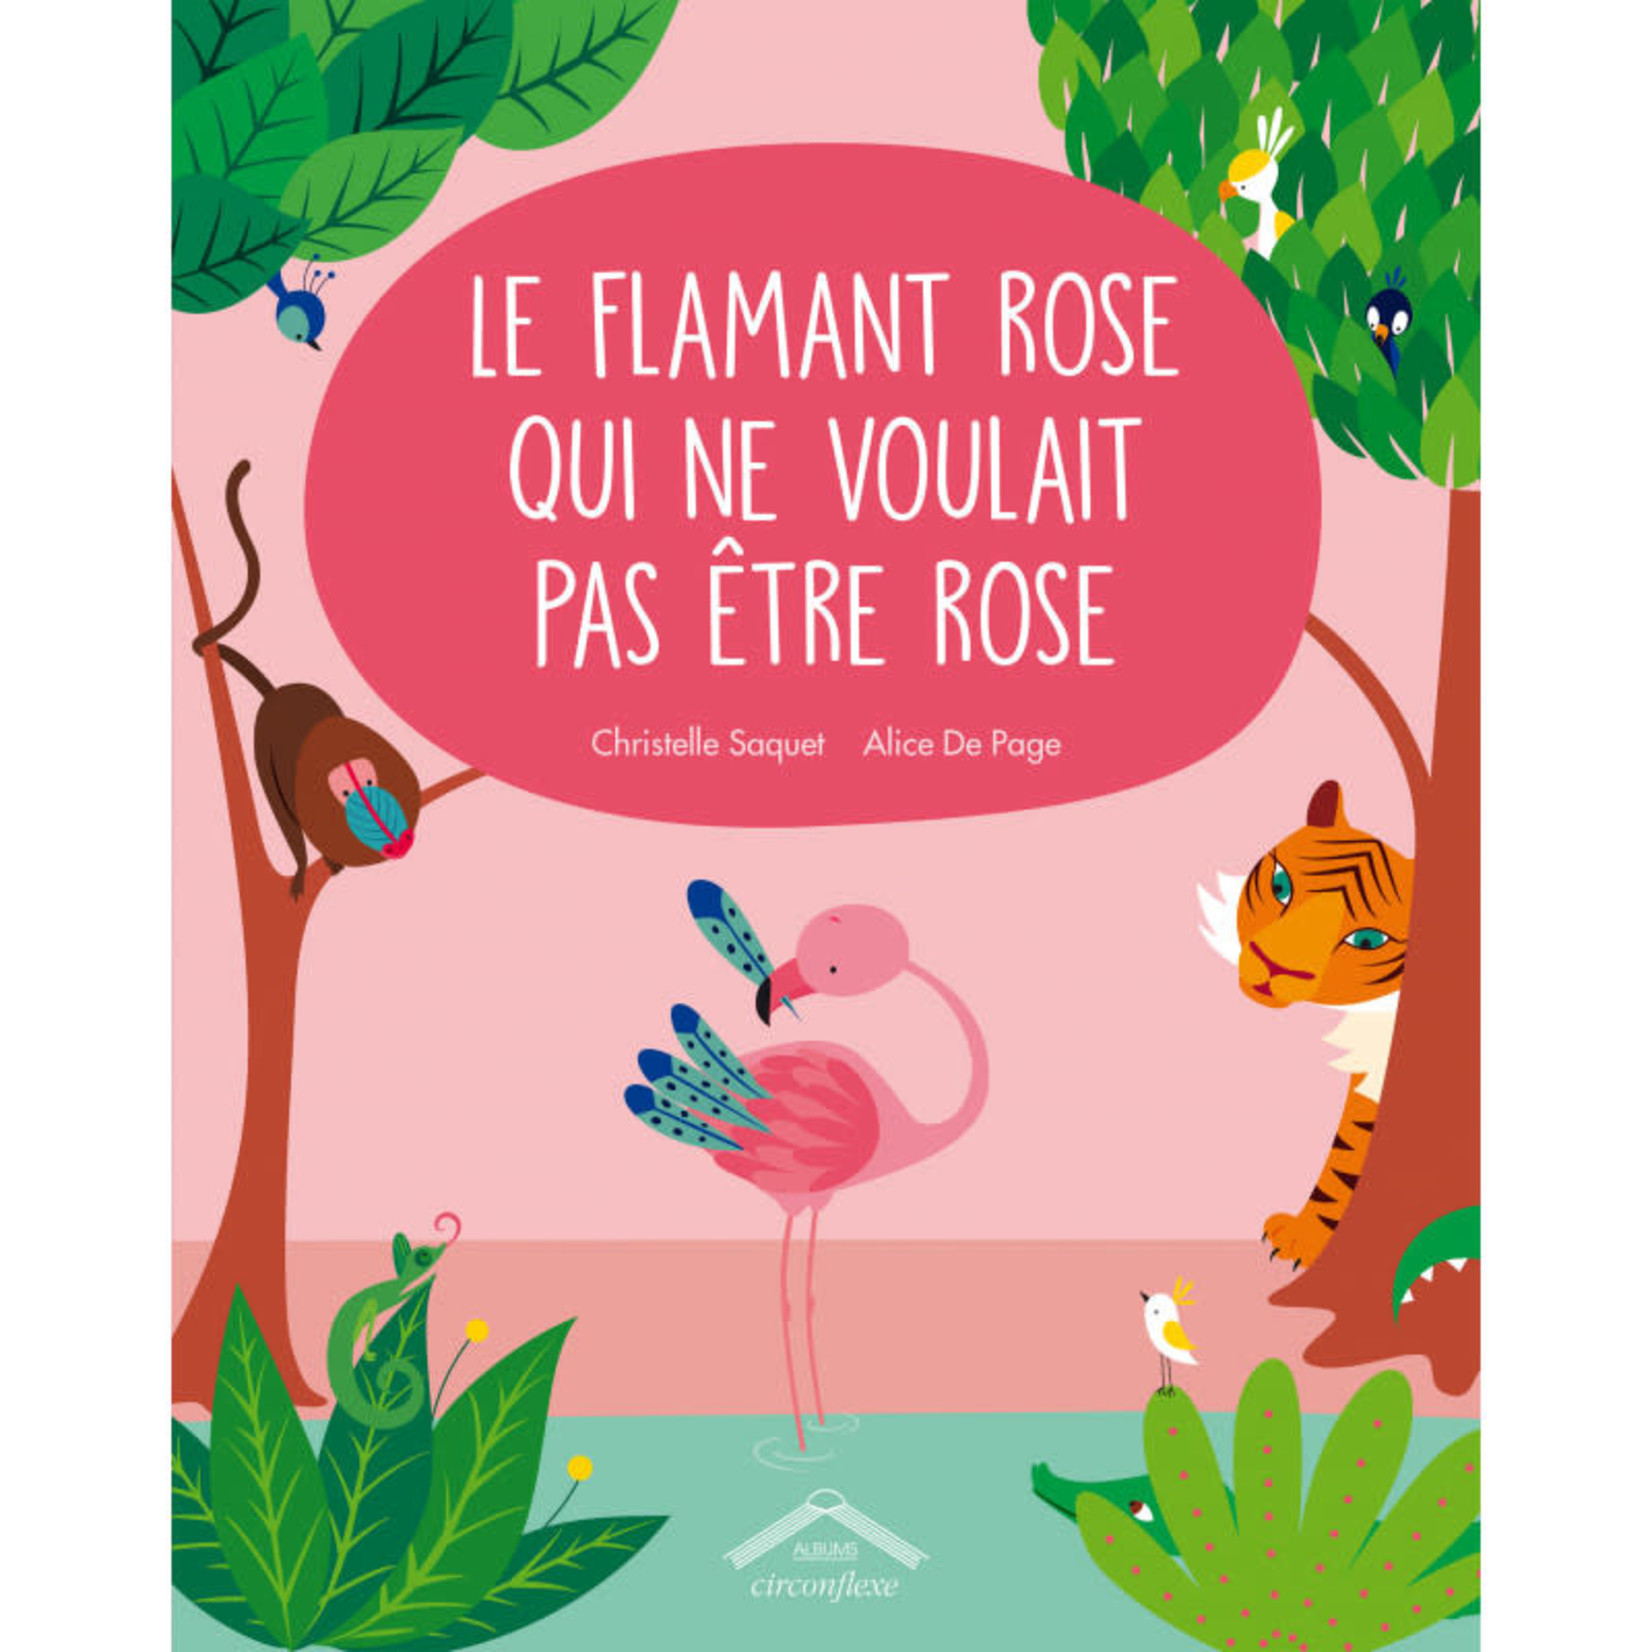 ALICE DE PAGE ALICE DE PAGE - "Le flamant rose qui ne voulait pas être rose"